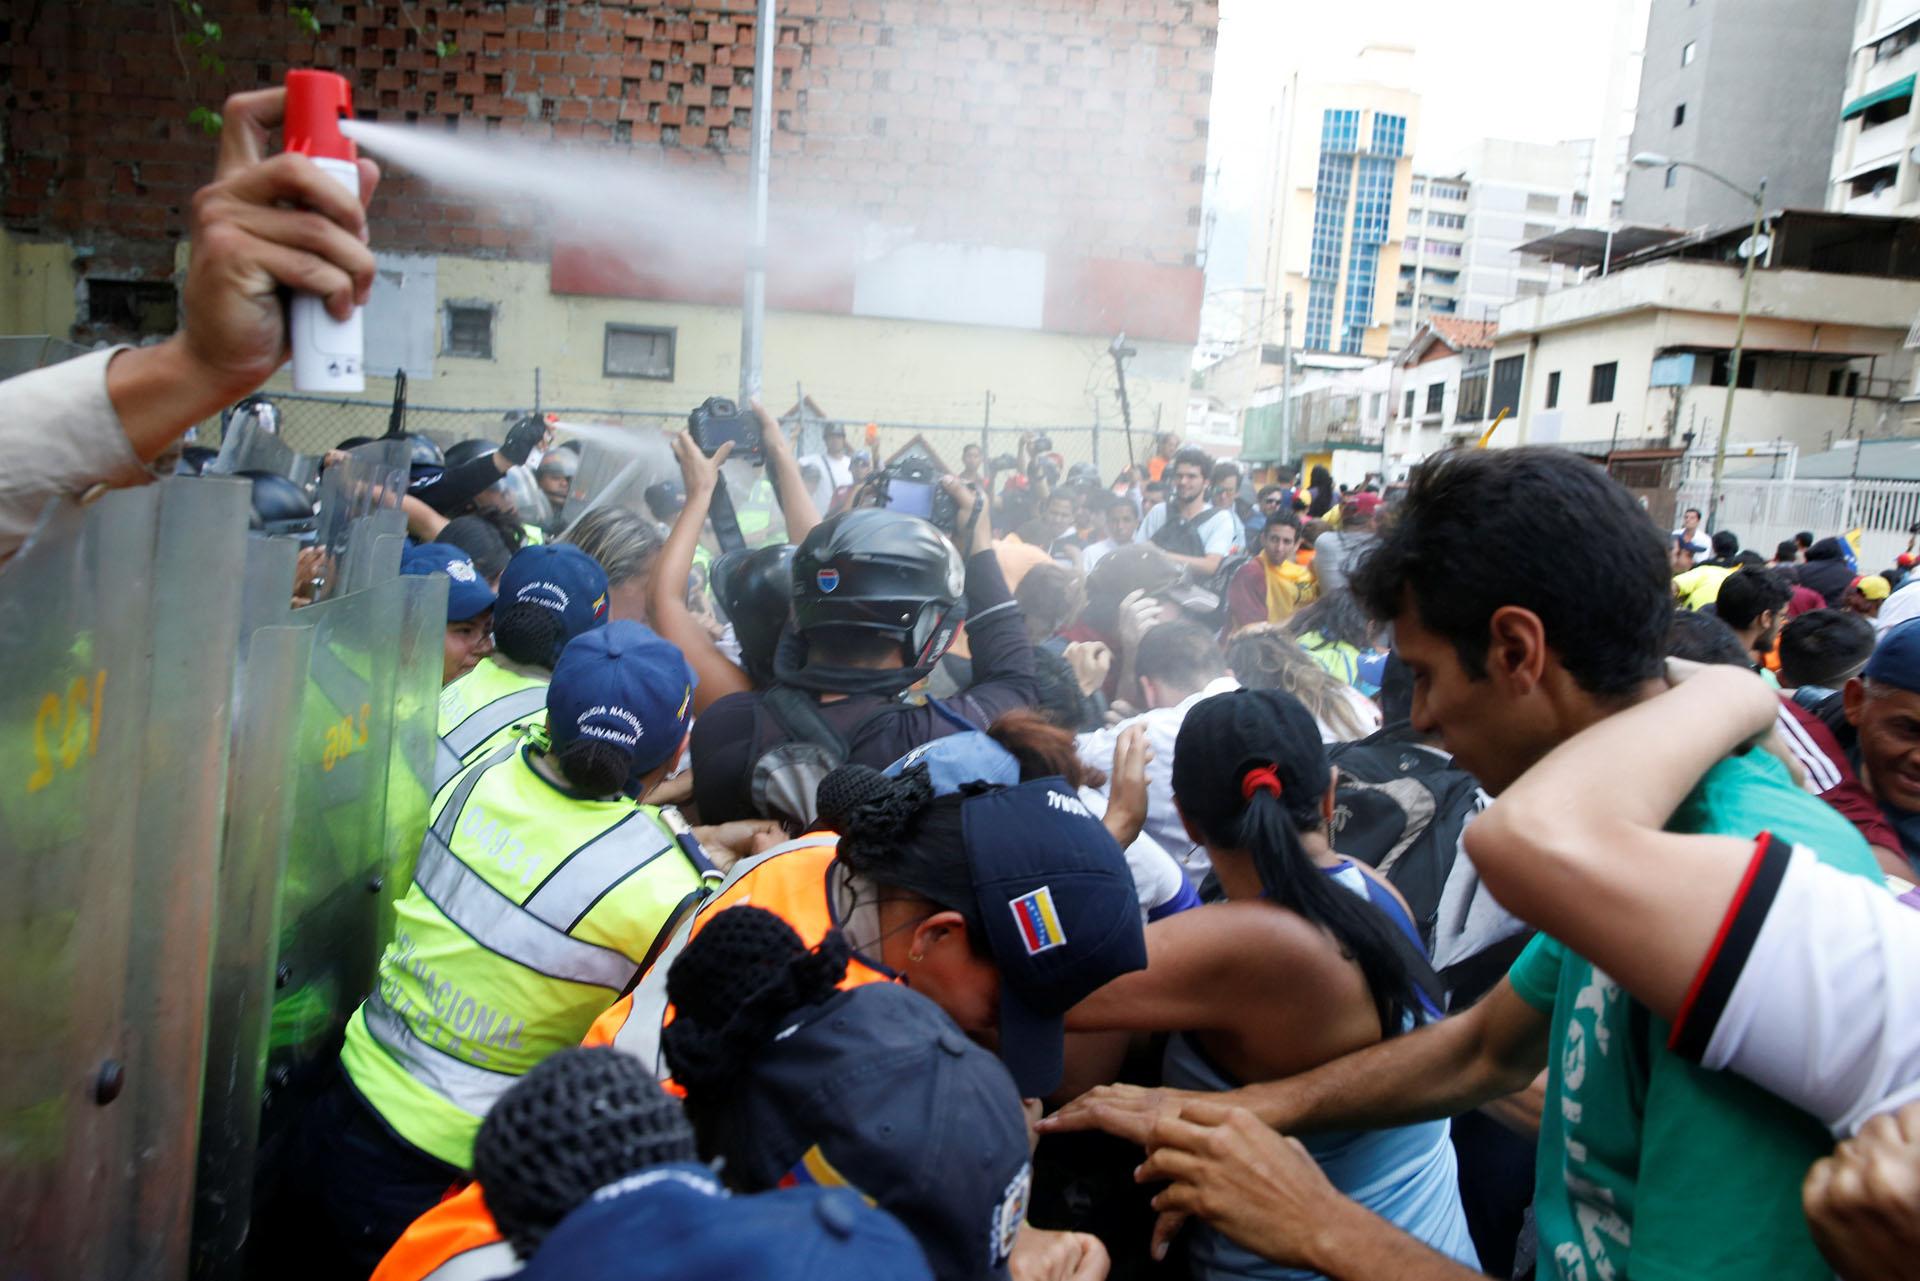 Protesta pacífica y represión ante ruptura del hilo Constitucional en Venezuela: FOTOS que dan la vuelta al mundo